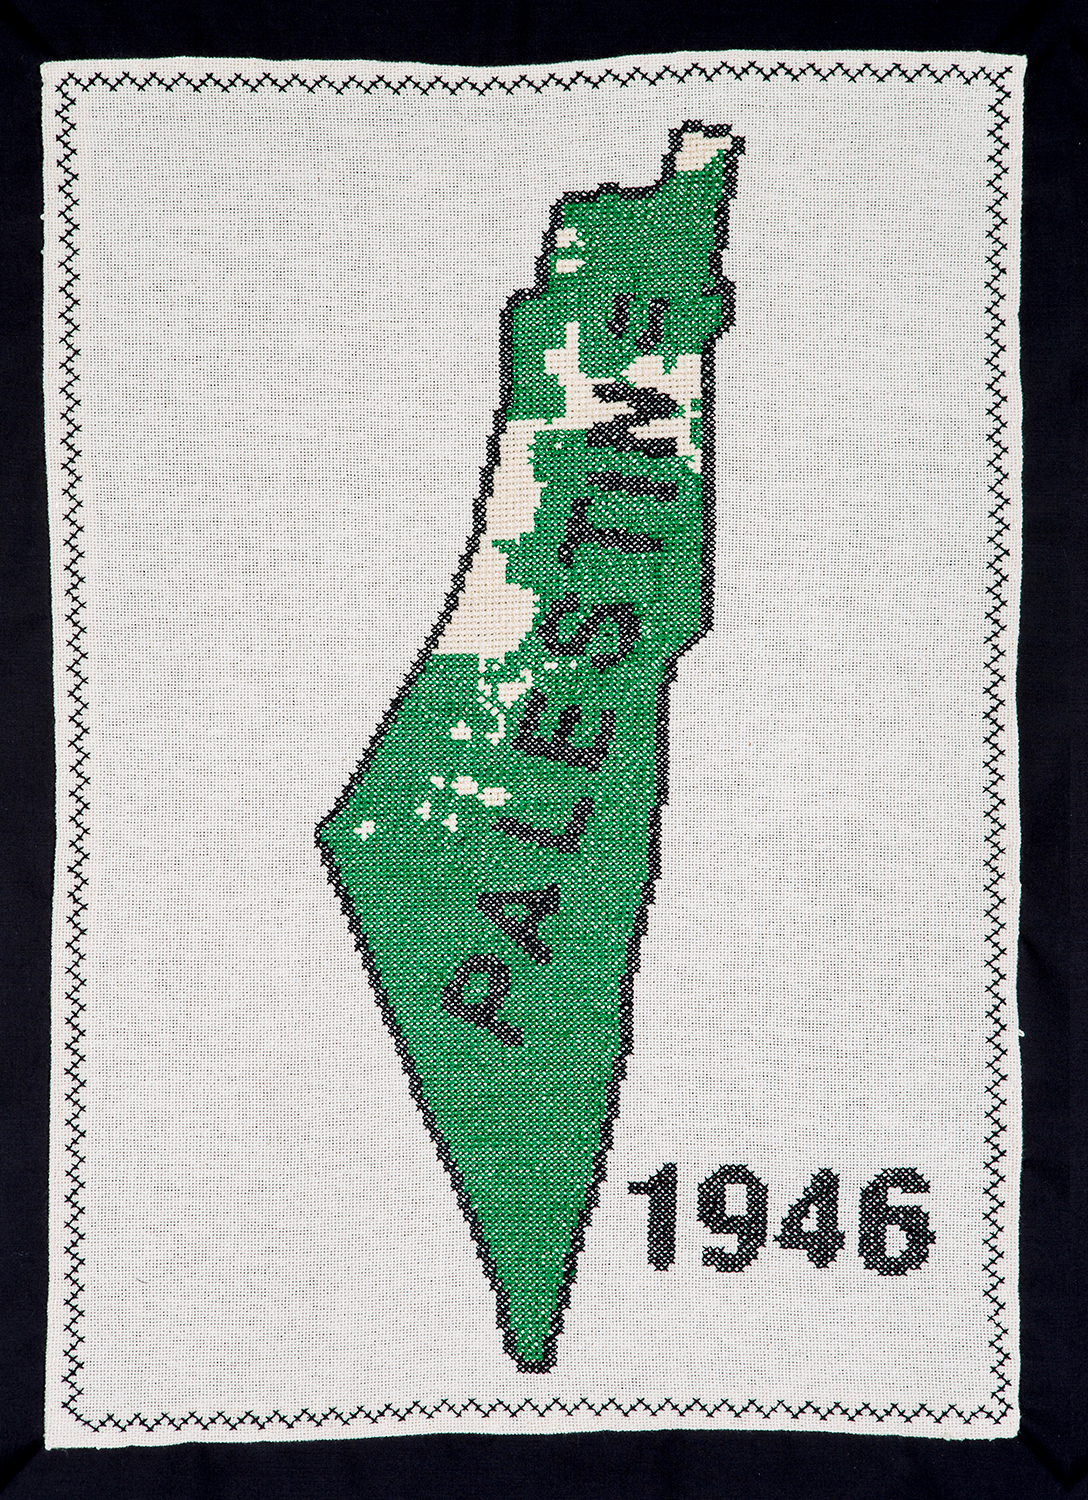 land-ownership-in-palestine1946_yipgni_sbbjrs.jpg